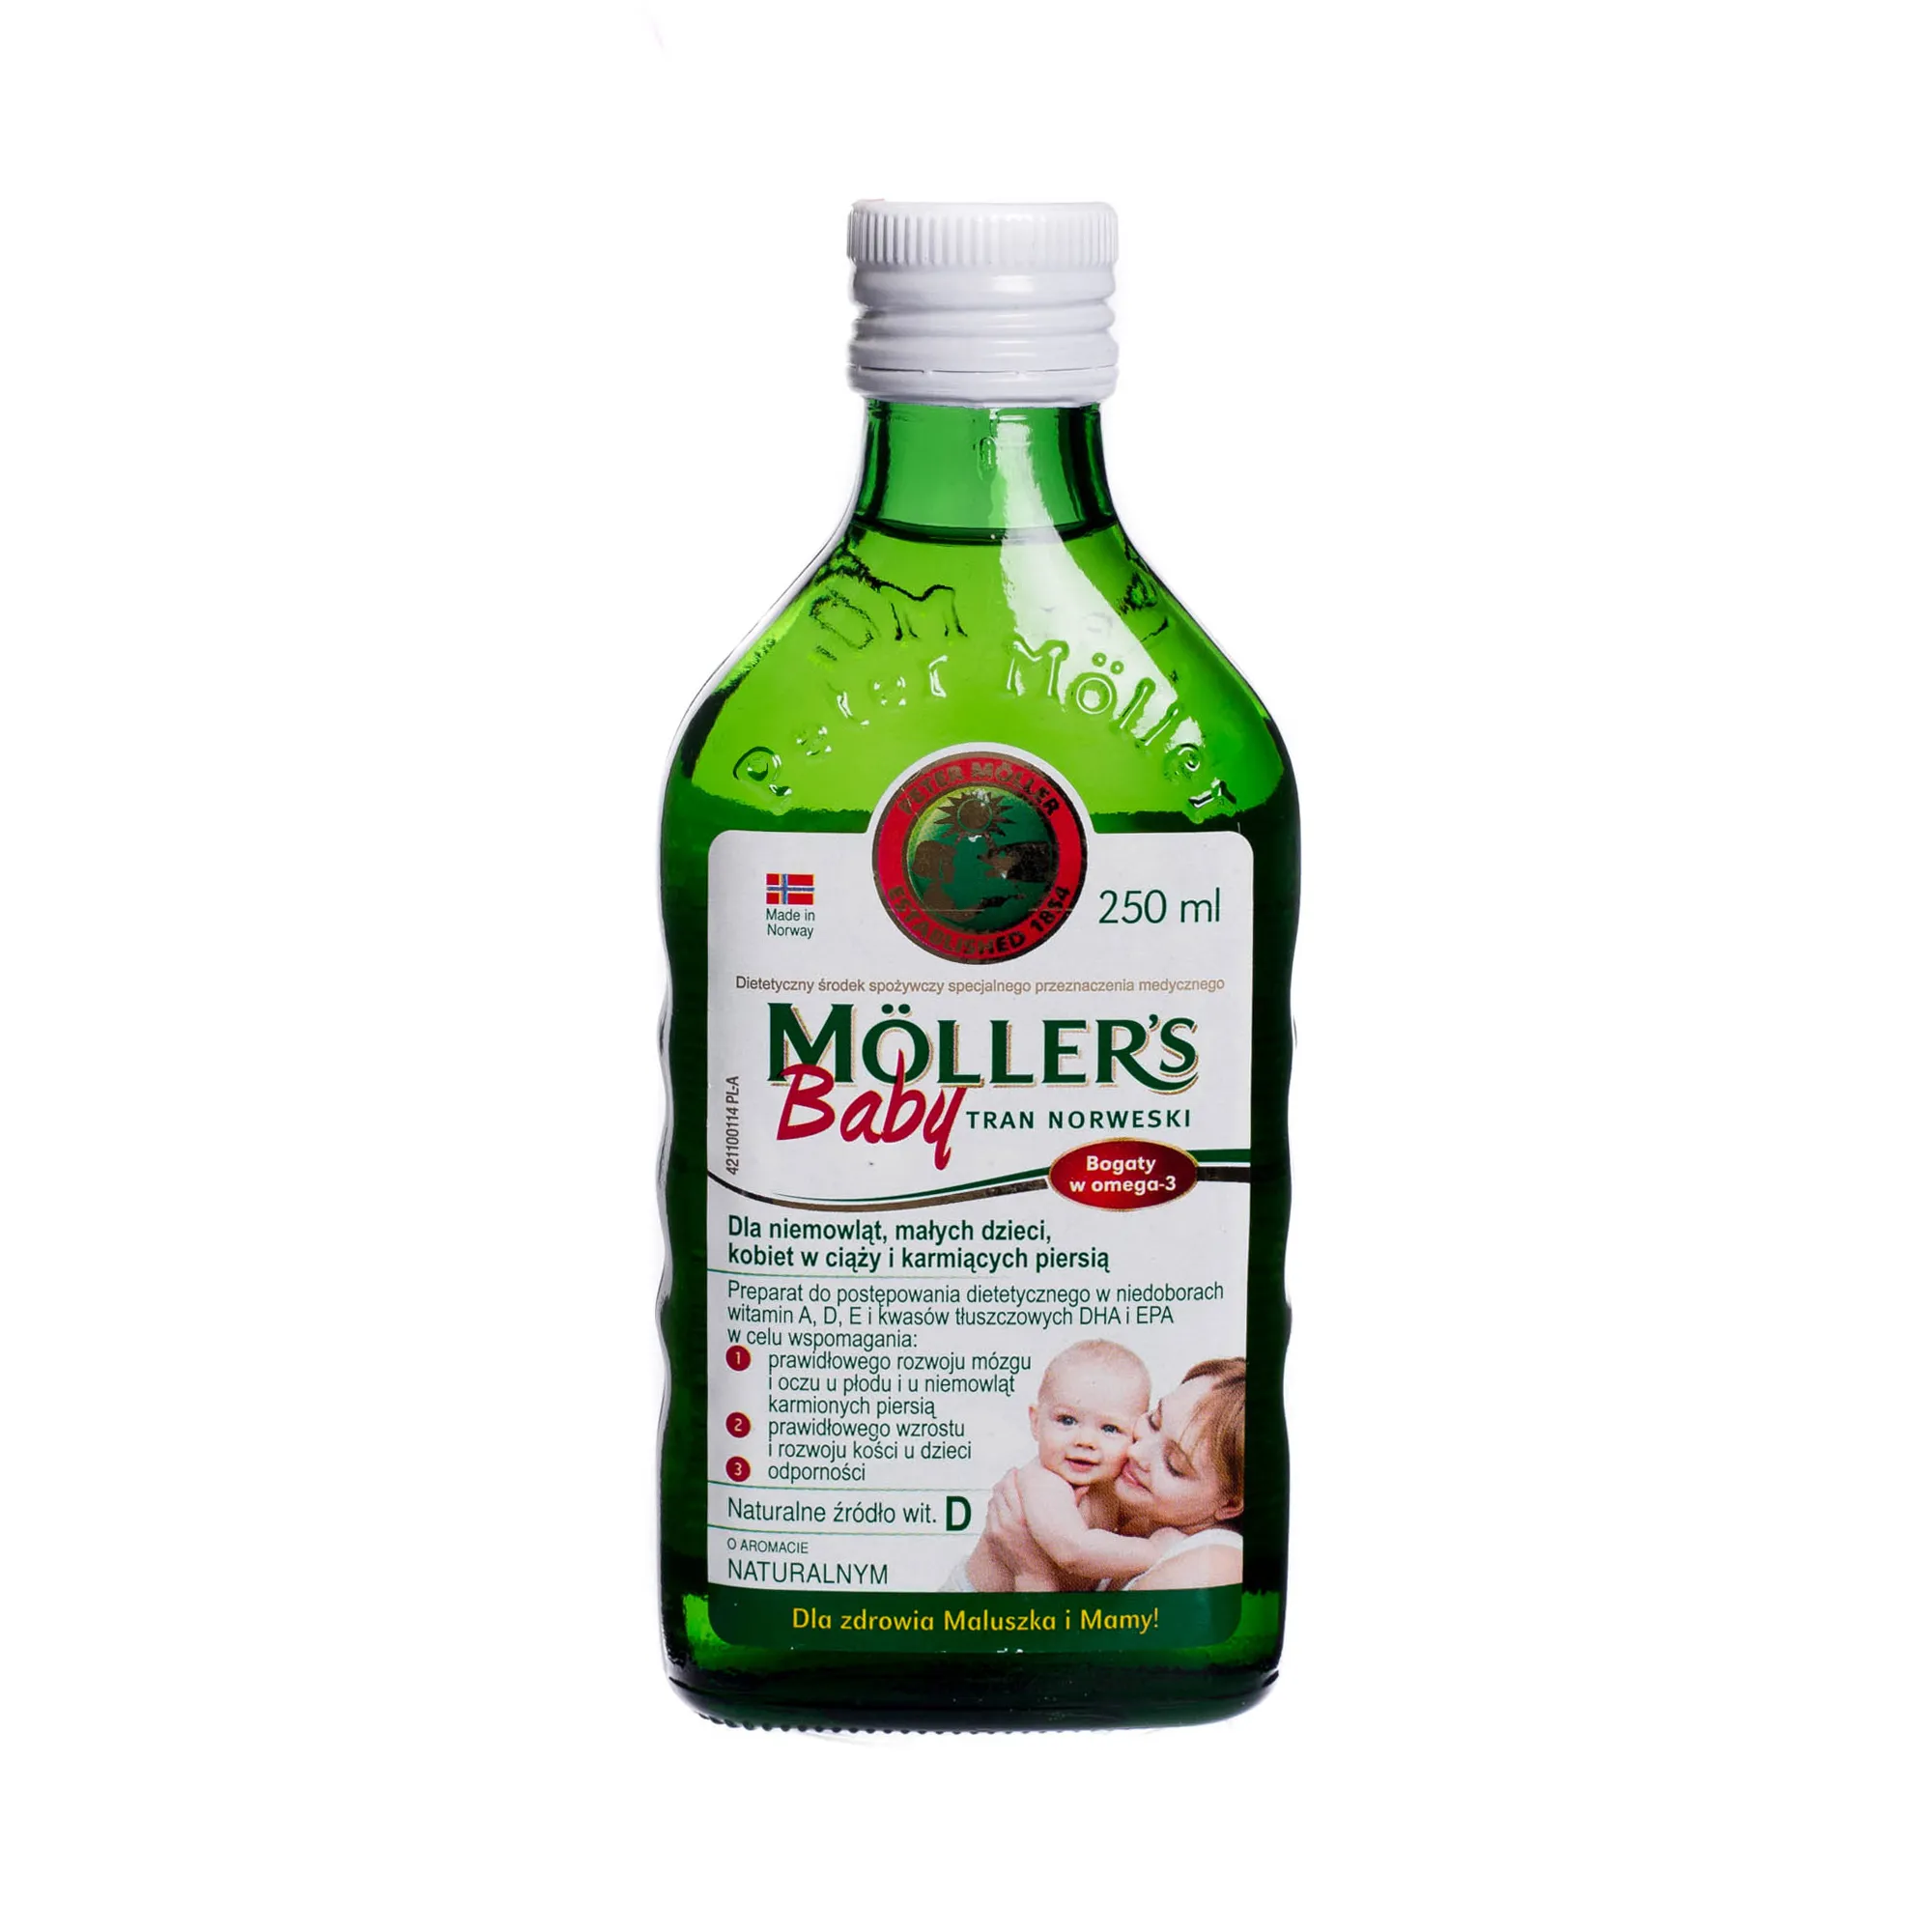 Mollers Baby Tran Norweski, Bogaty w omega-3, dla niemowląt, małych dzieci, kobiet w ciąży i karmiących piersią, 250 ml